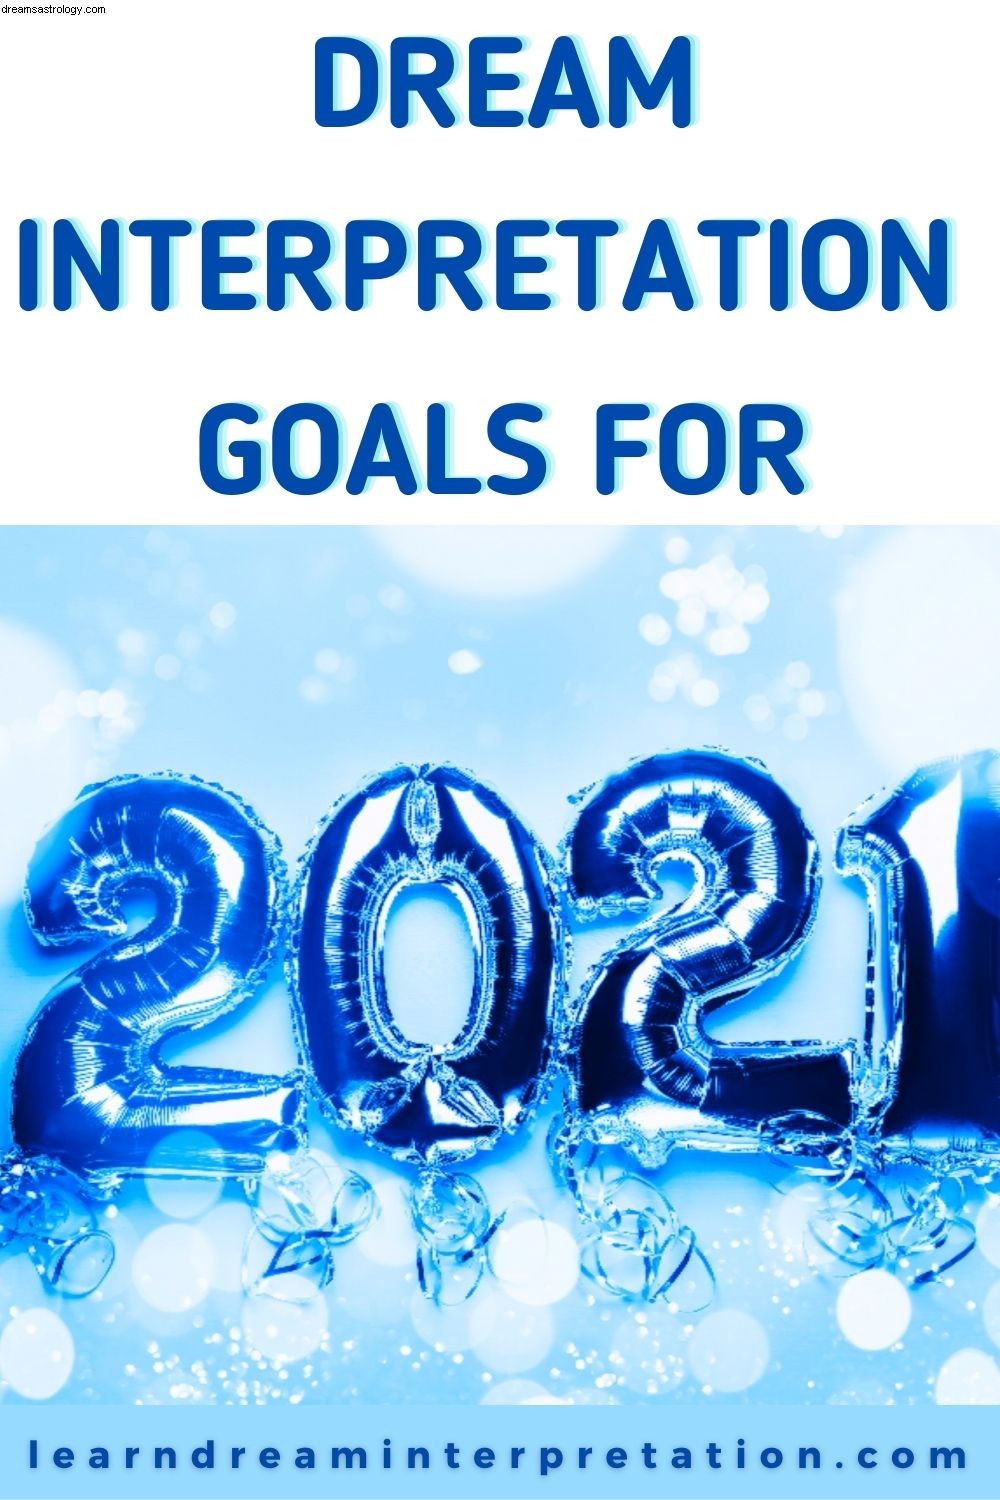 Obiettivi di interpretazione dei sogni per il 2021 